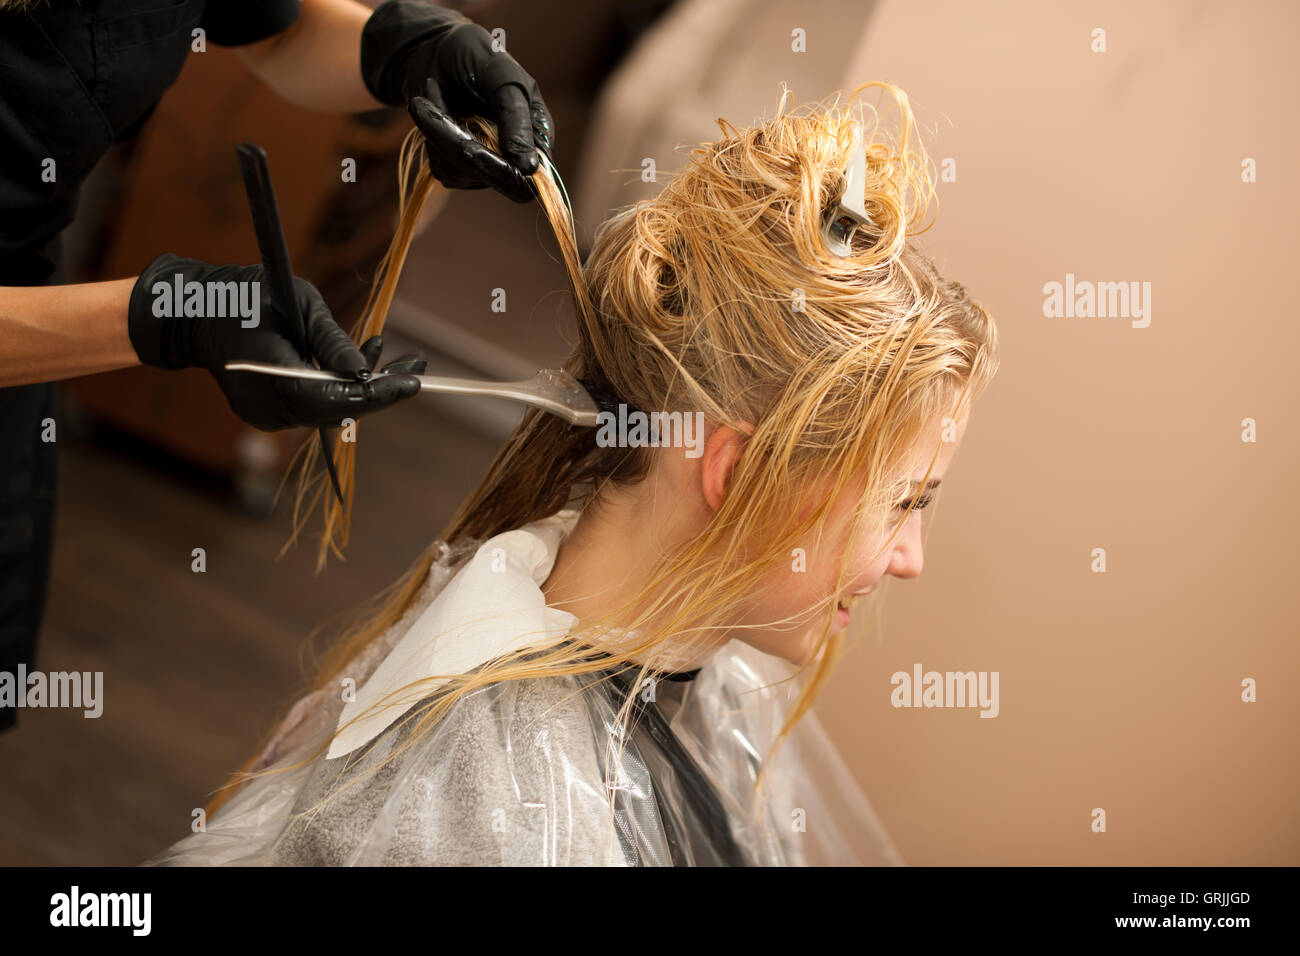 Friseur am Arbeitsplatz - eine Farbe auf Kunden Haar anwenden, nach Haarschnitt und Frisur in einem Ei vorher Friseur Stockfoto